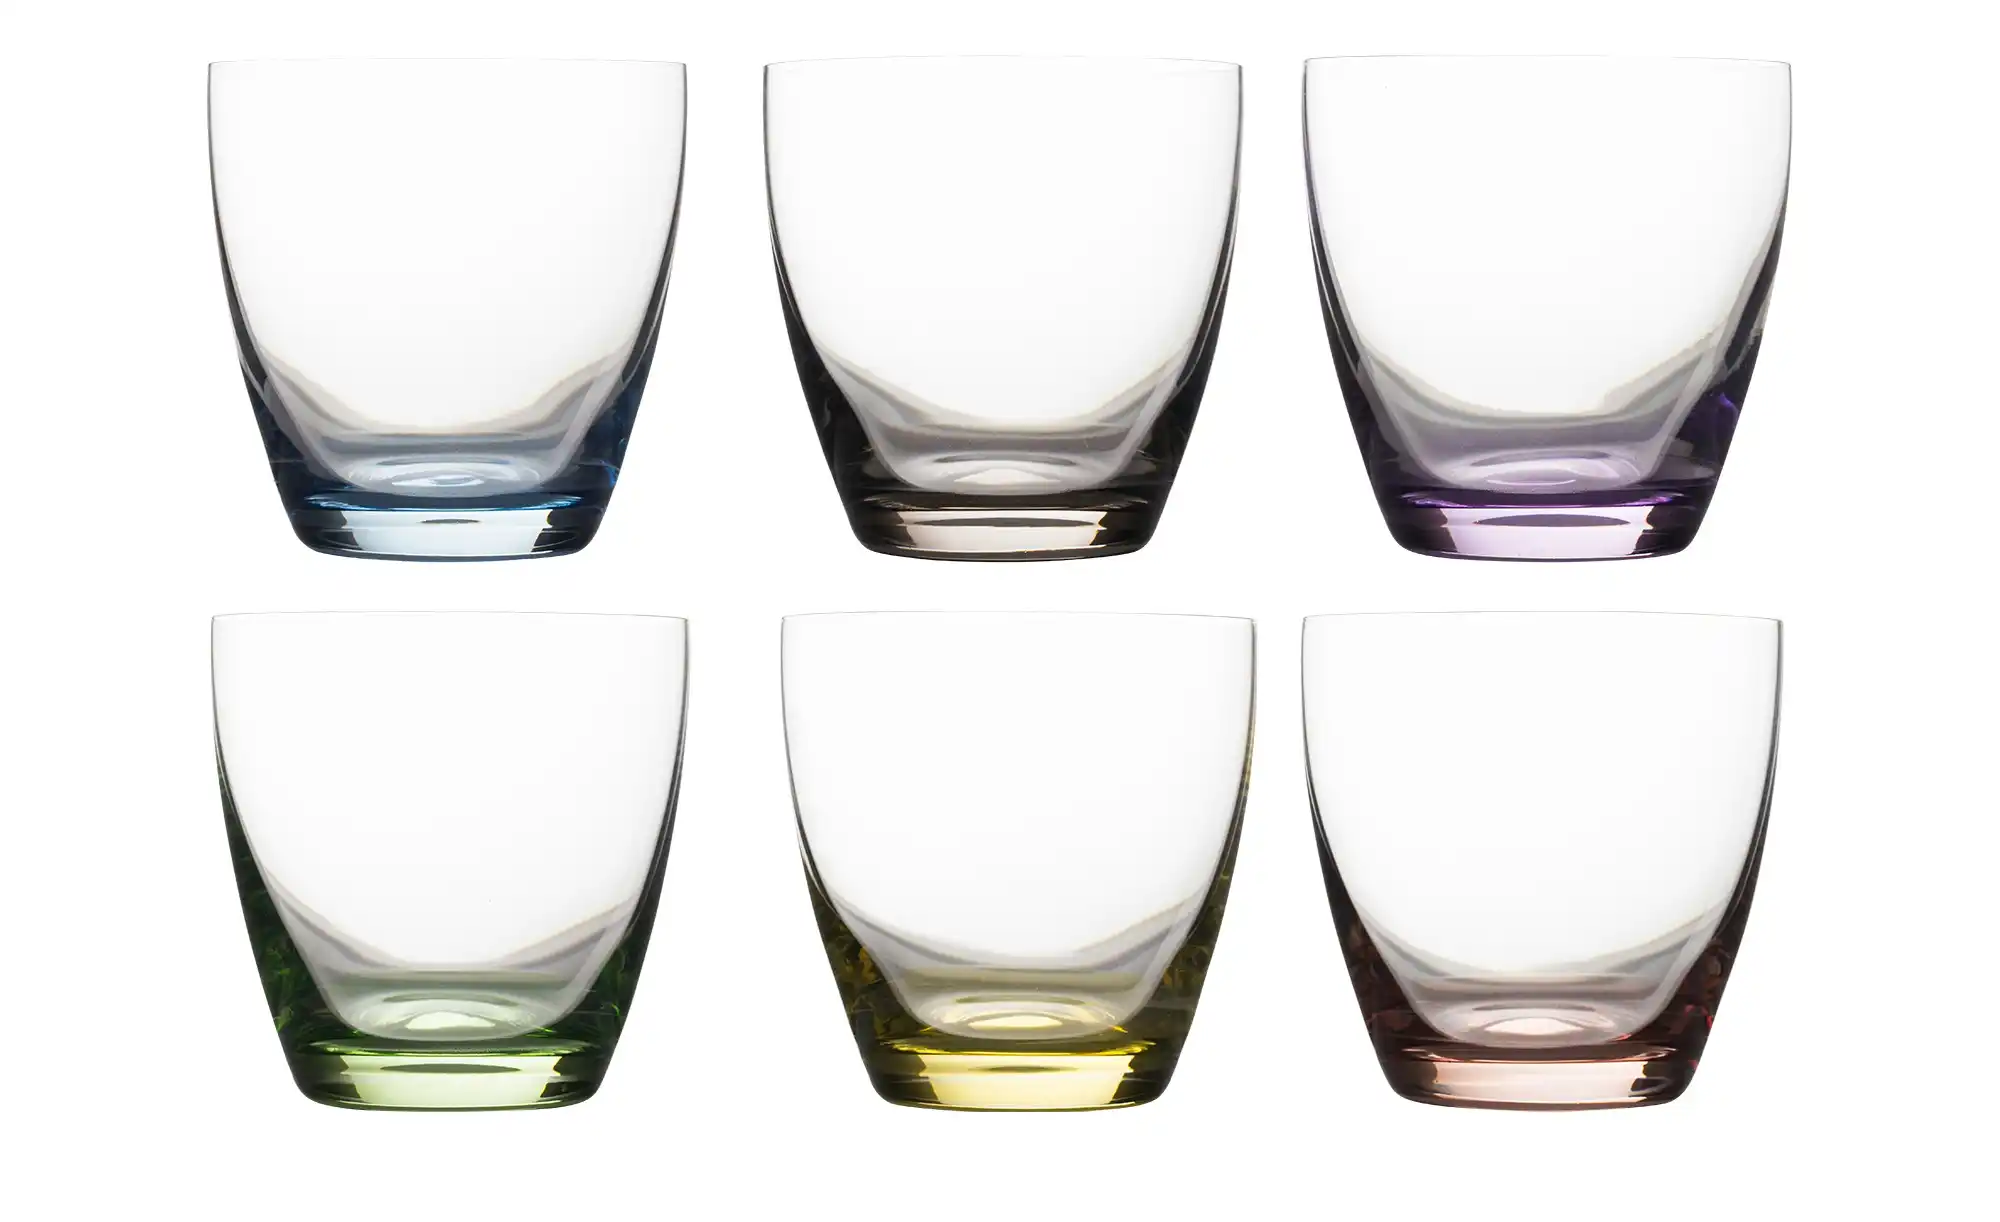 Peill Putzler Gläserset, 6 teilig Viva ¦ mehrfarbig ¦ Kristallglas Gläser Karaffen Trinkgläser Höffner  - Onlineshop Möbel Höffner